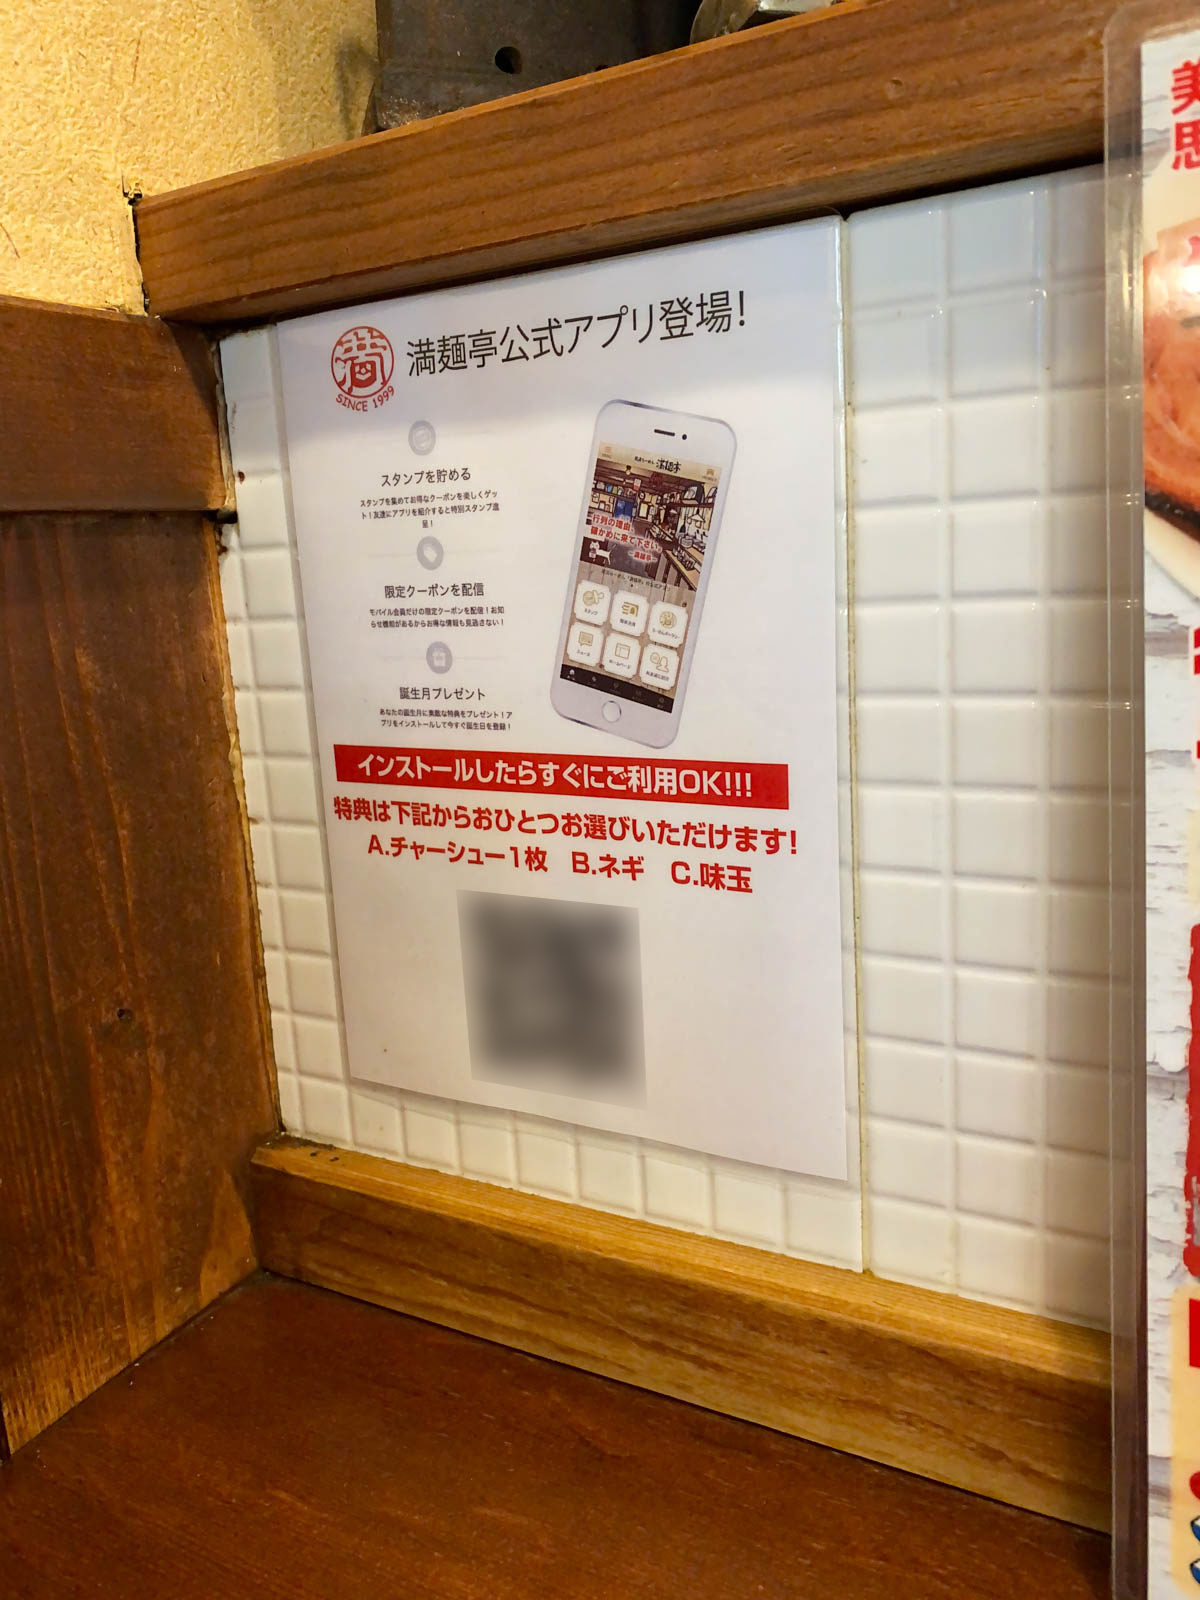 満麺亭： 店内のアプリの説明